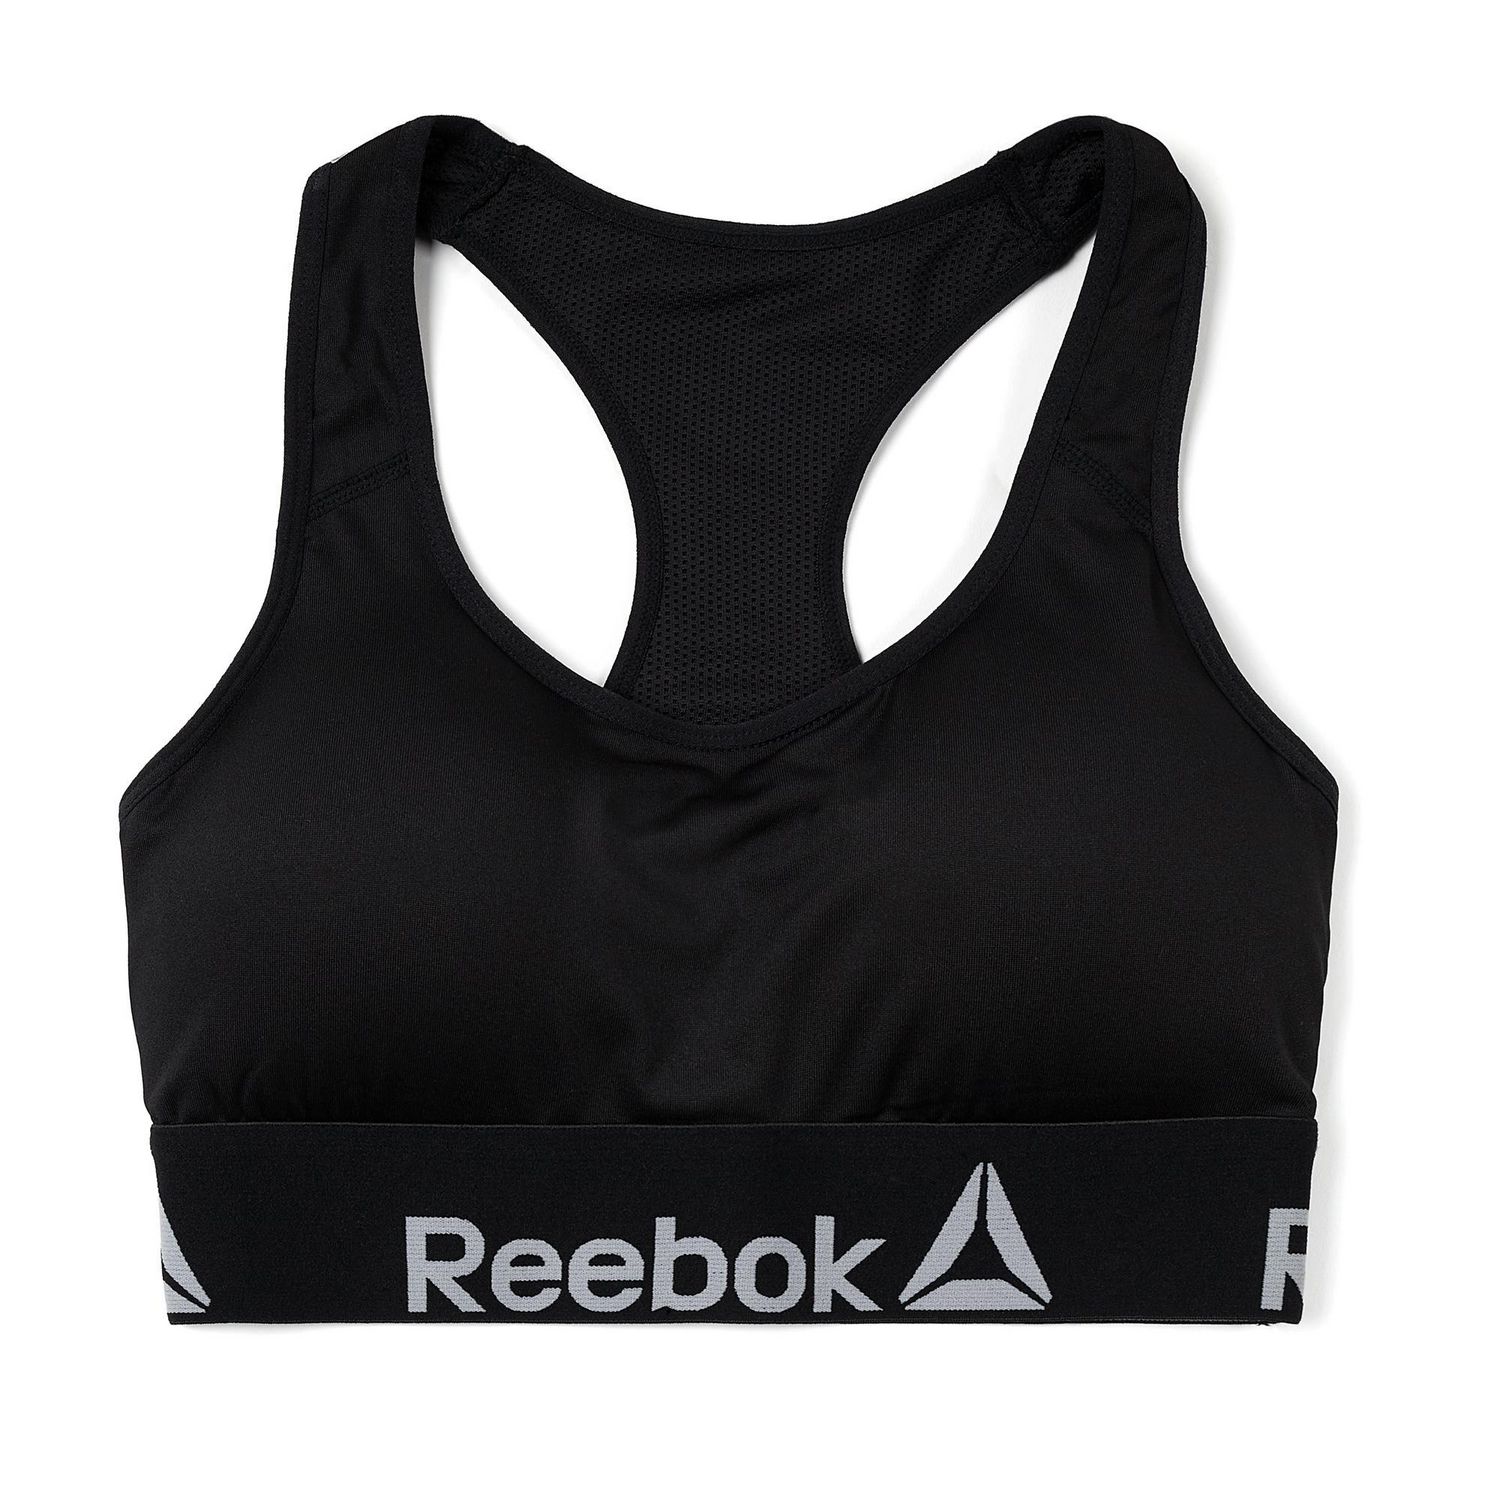 Reebok CrossFit Front Rack Bra  Reebok crossfit, Reebok sports